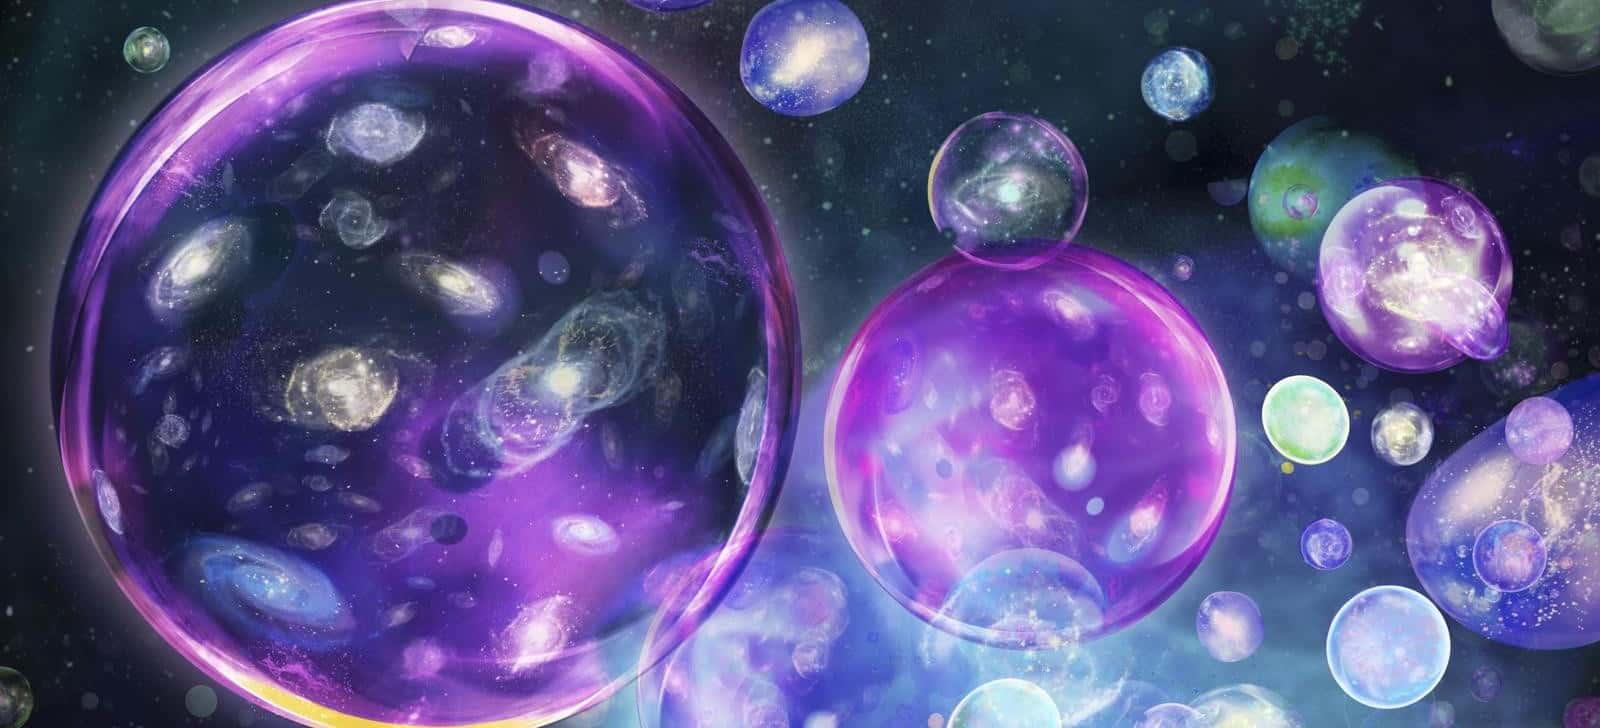 Multiversebubble E1461409135422 مجلة نقطة العلمية